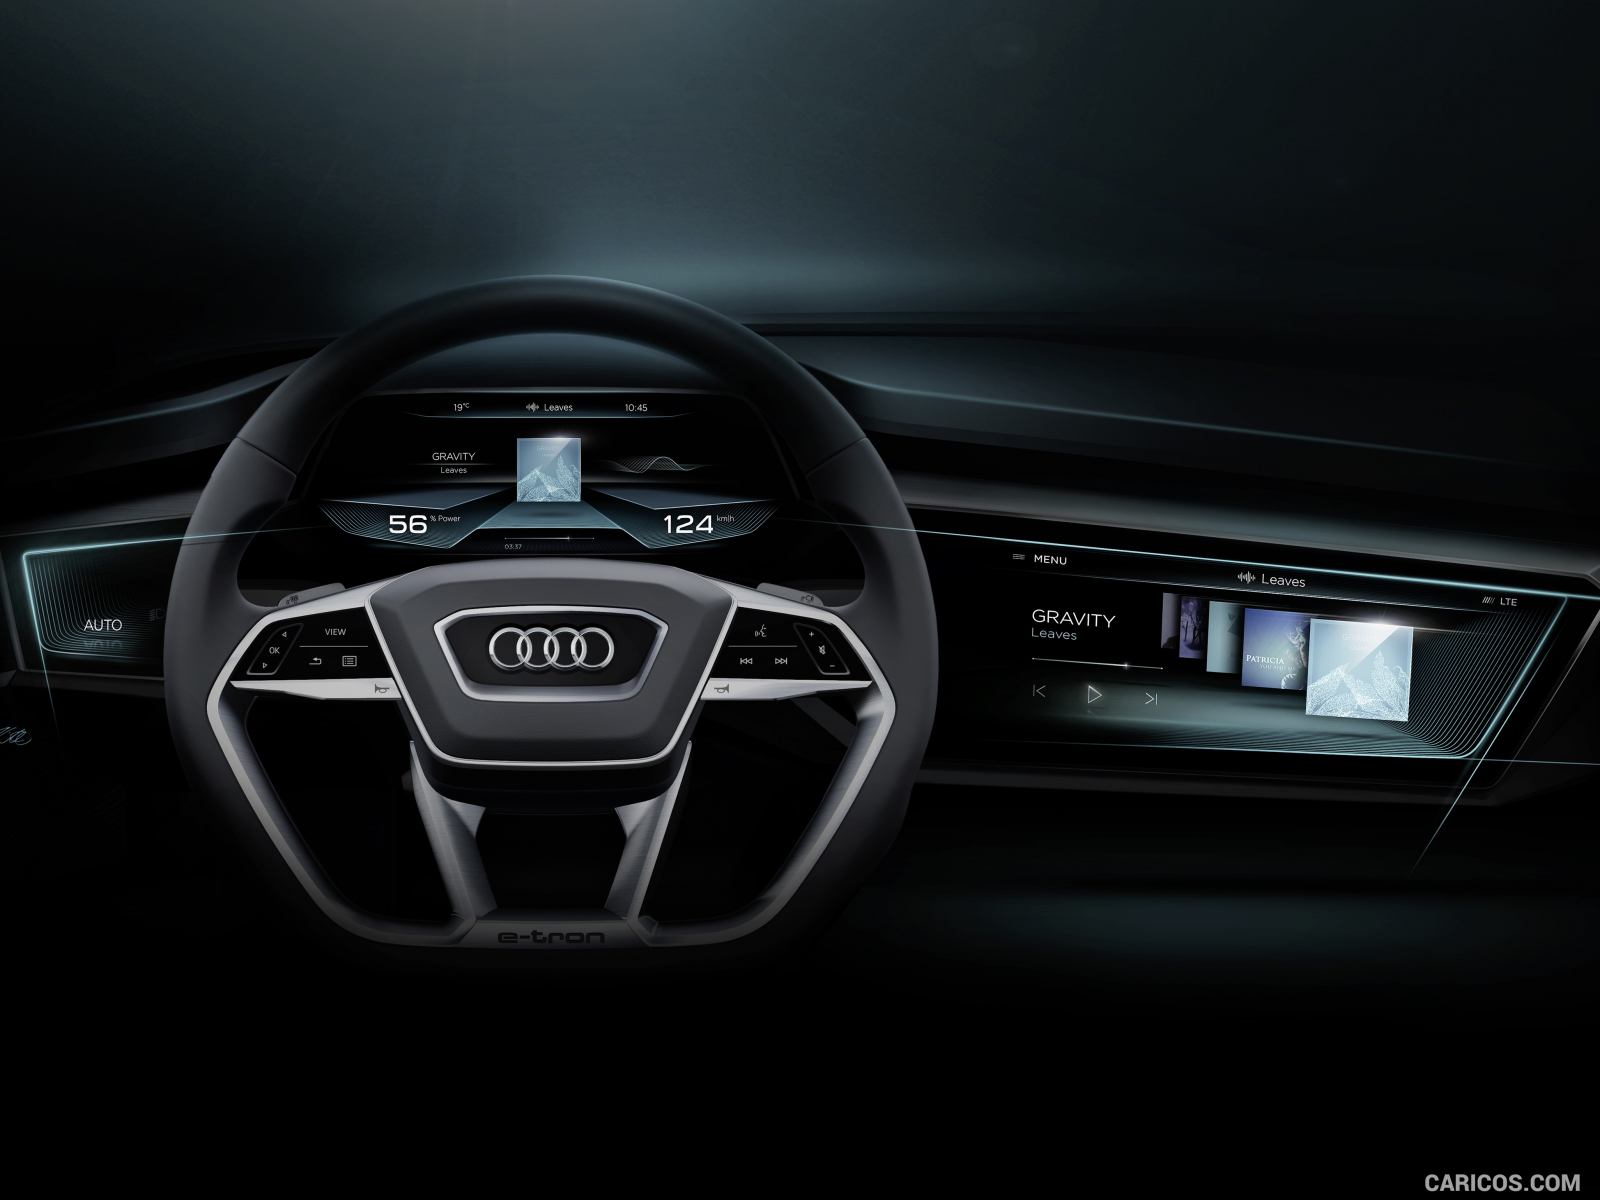 2015 Audi etron Quattro SUV Concept  Design Sketch Wallpaper 1600 x 